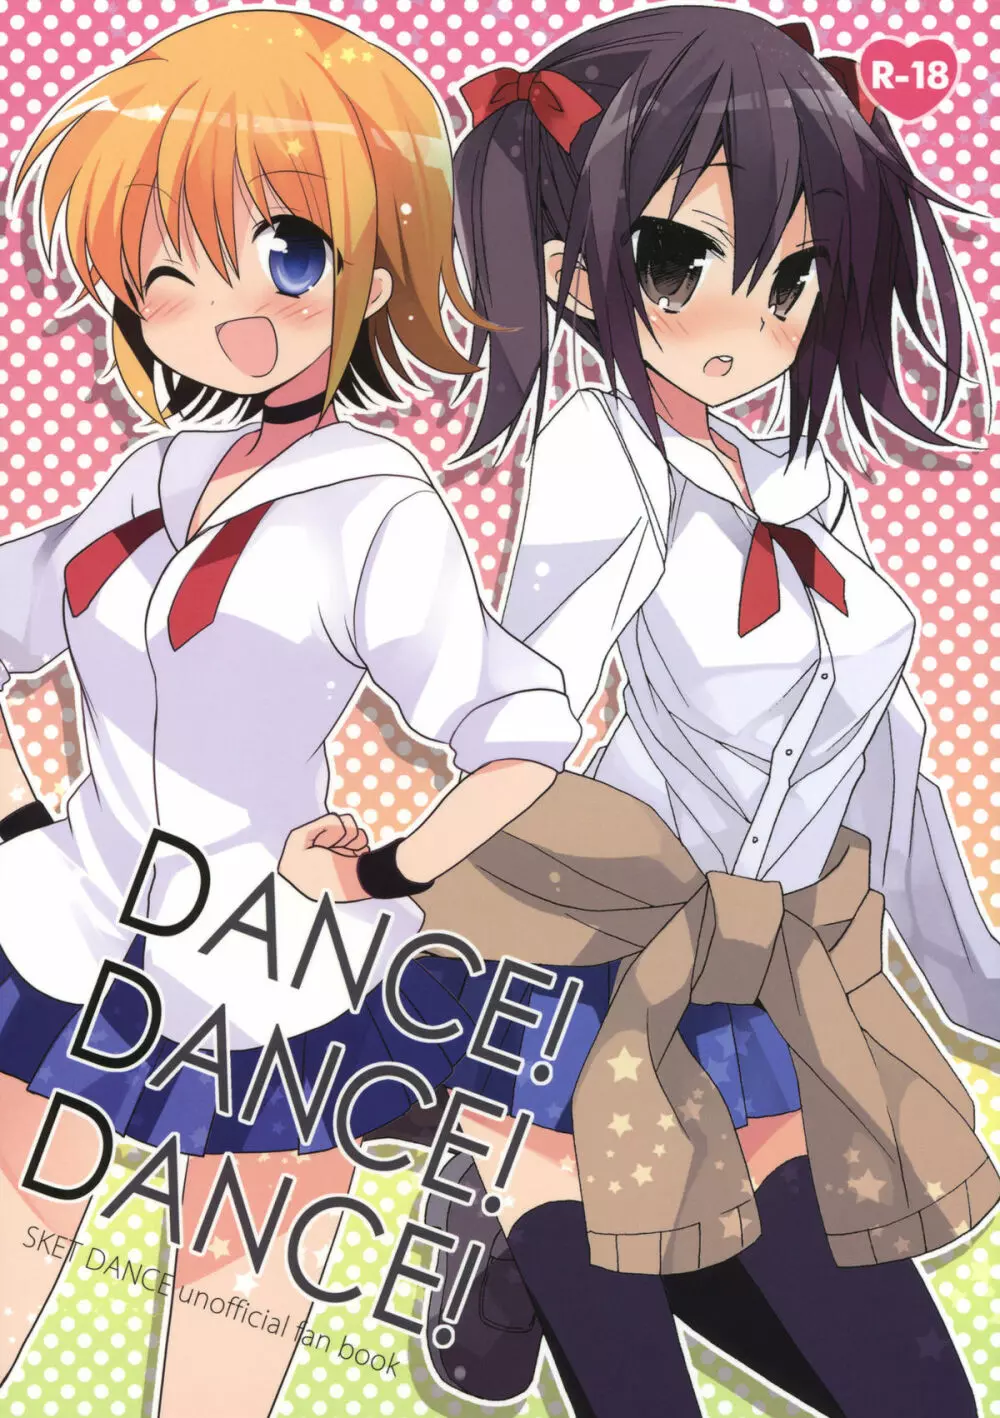 DANCE! DANCE! DANCE!